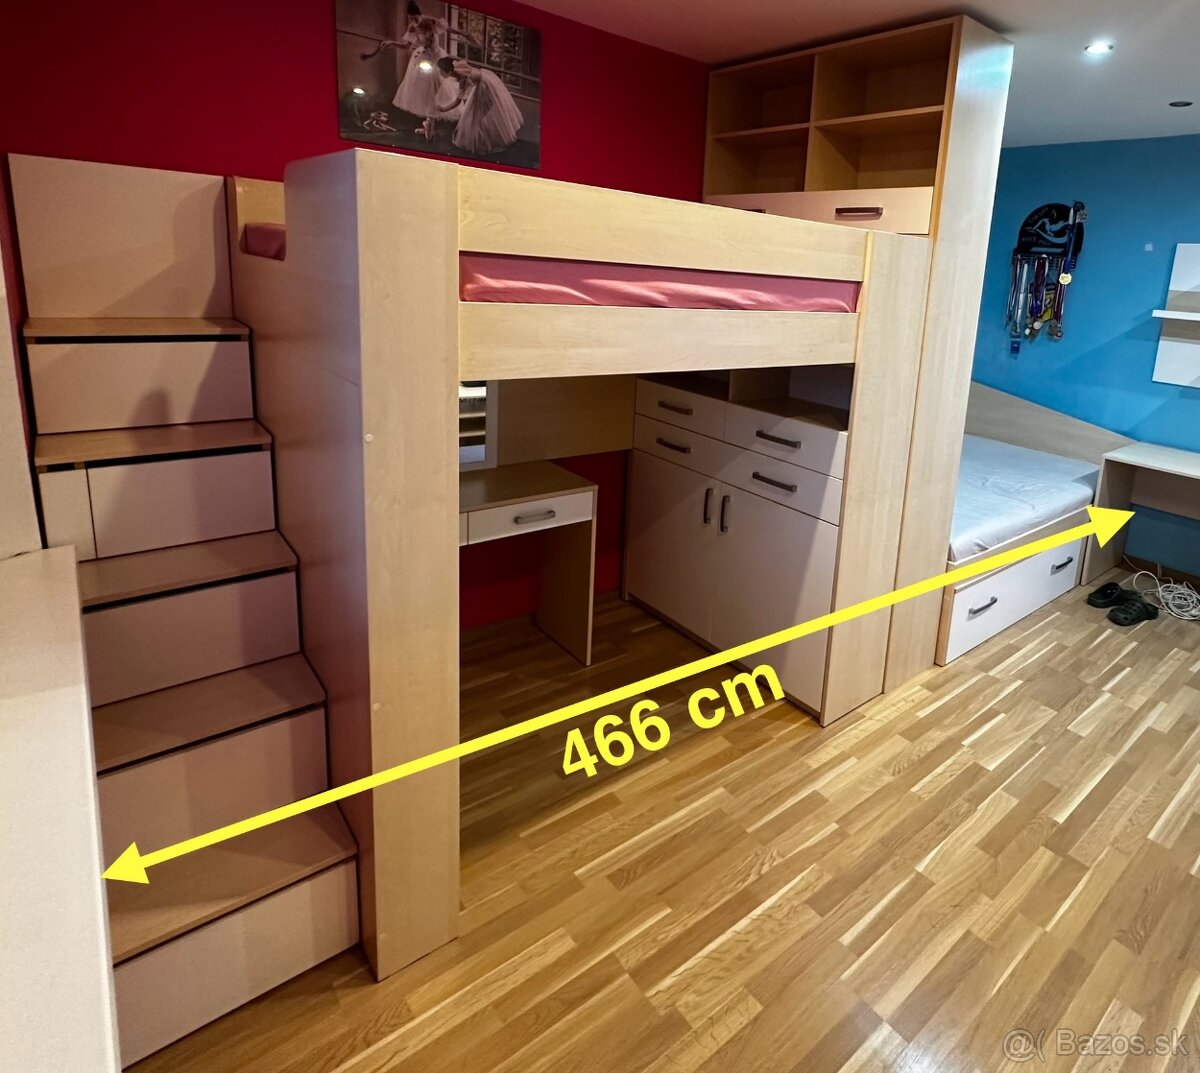 Detská izba komplet (2 postele, stoly, skriňa)